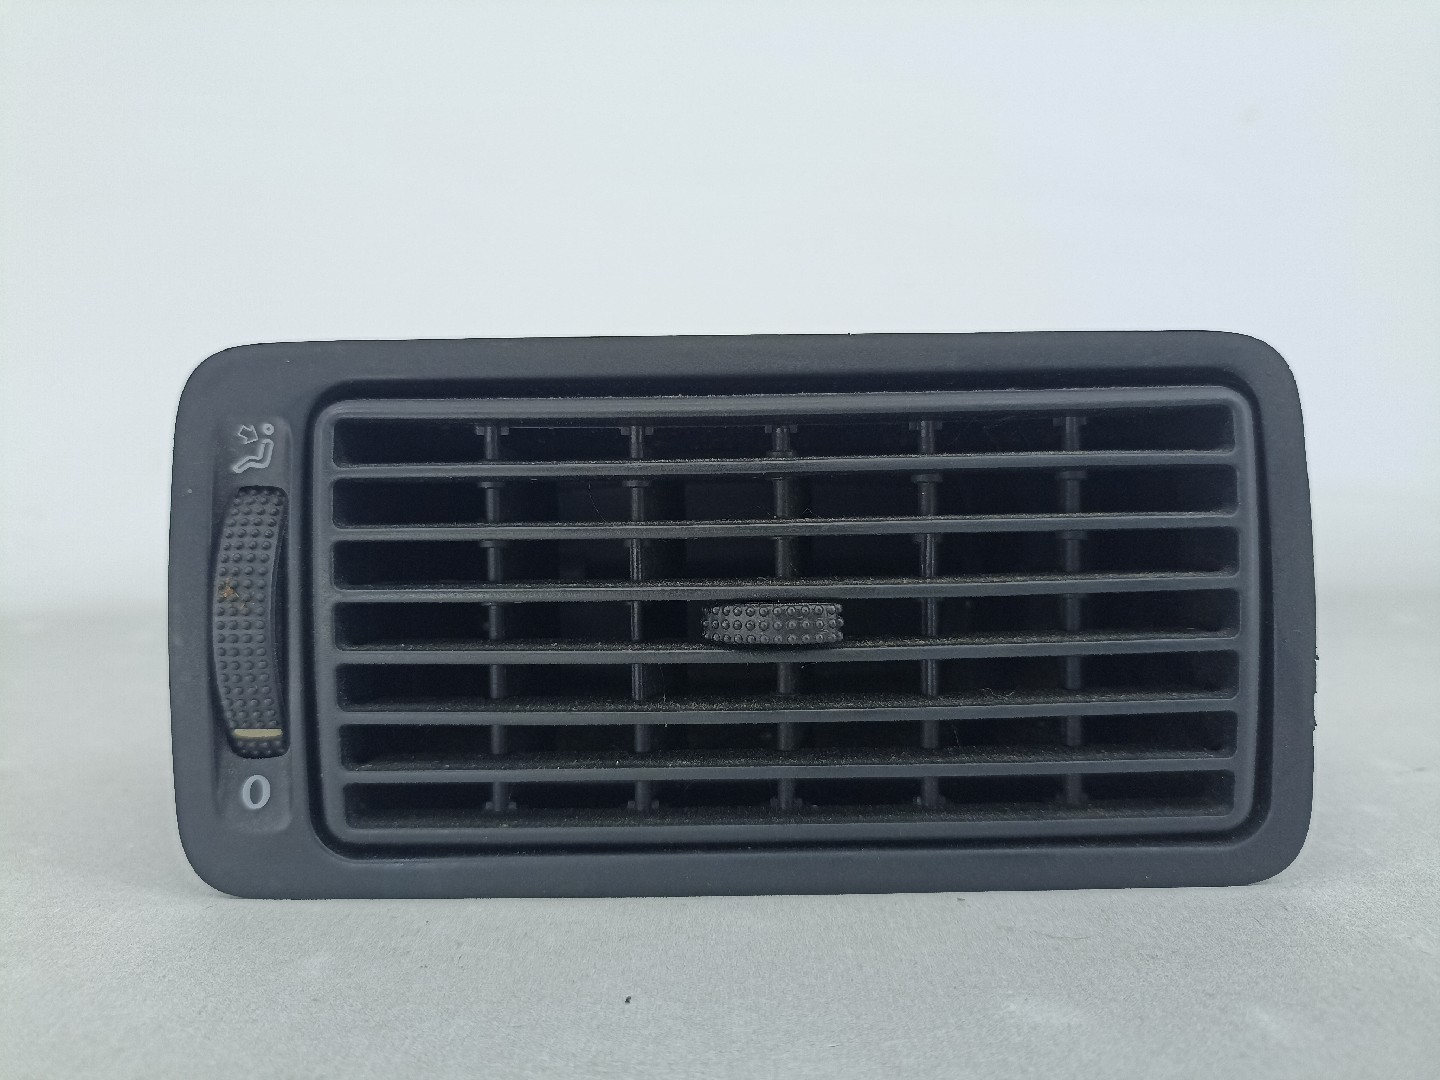  Panneau de commande en fibre de carbone RRX pour fenêtre de  grille de ventilation centrale - Décoration intérieure Accessoire console  noire - Pour fille - Pour kit Golf 4 MK4 (kit de commande)